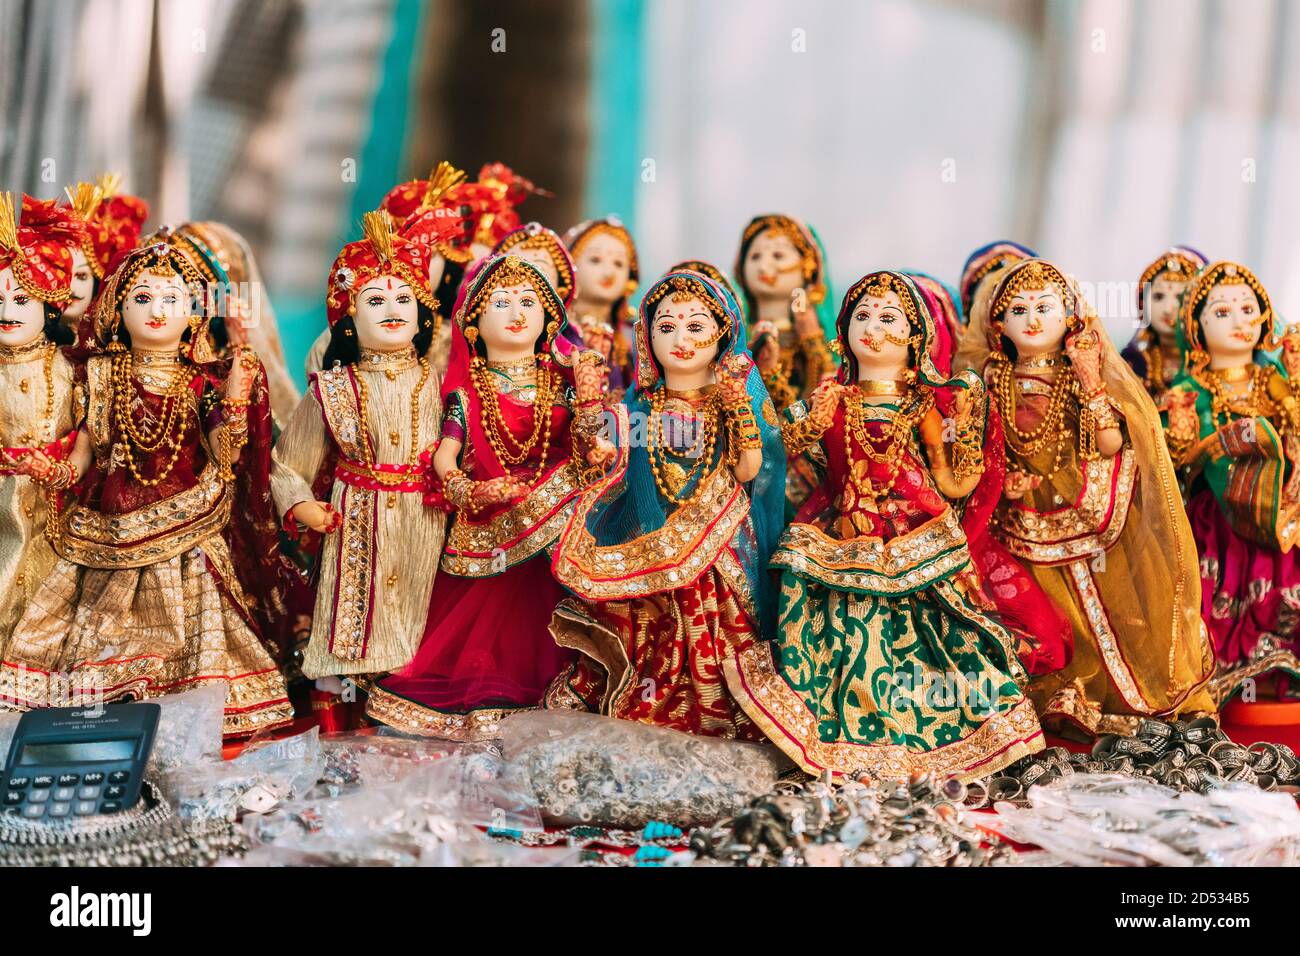 Anjuna, Goa, India. Bambole folcloristiche indiane. Le tradizionali bambole folcloristiche nazionali sono souvenir popolari dall'India. Foto Stock